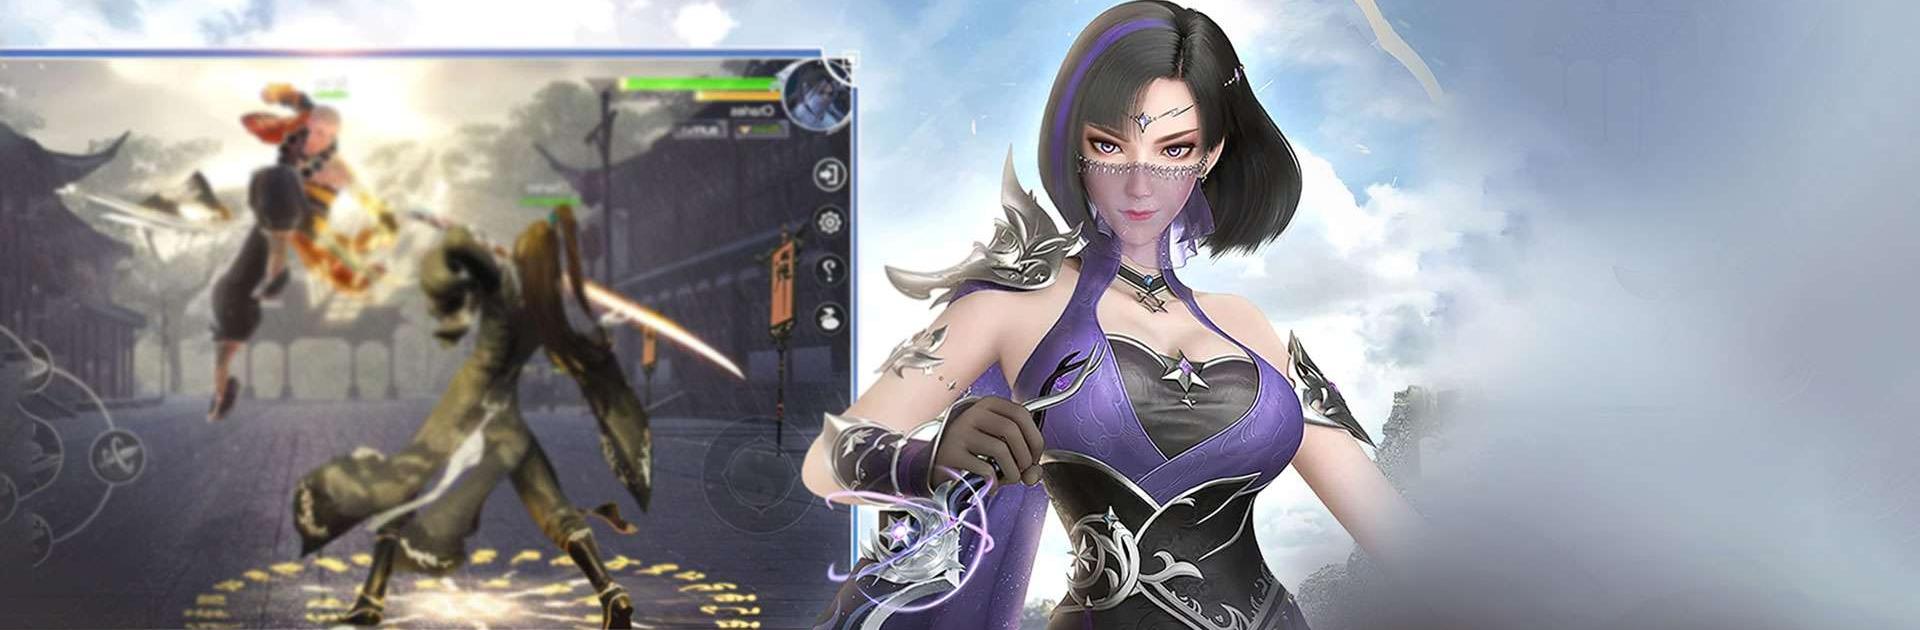 Blade Origin: Oriental fantasy